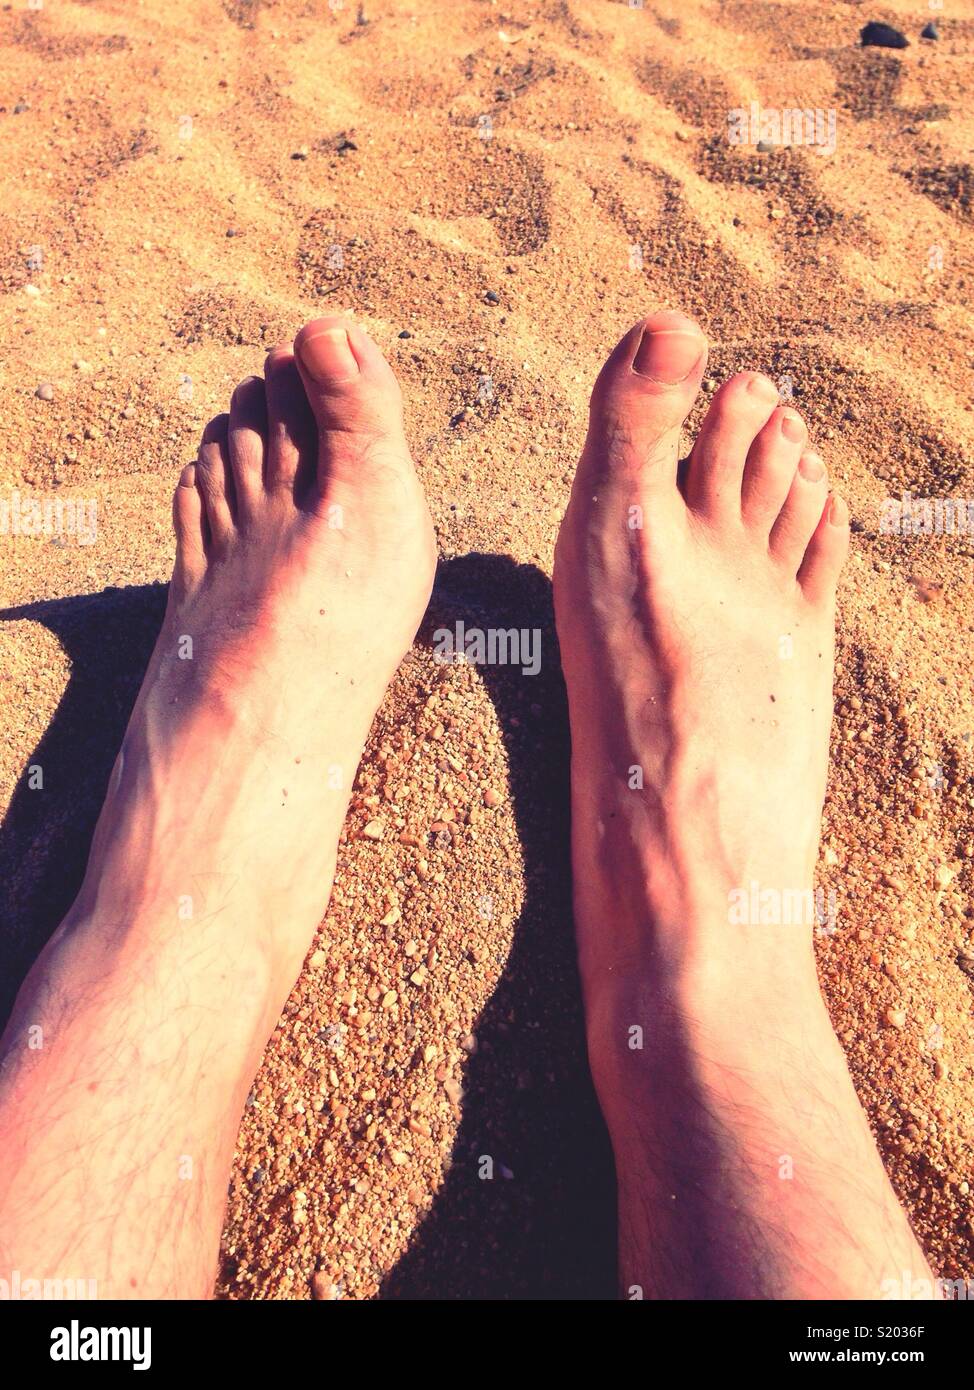 Male feet on a sandy beach. Stock Photo